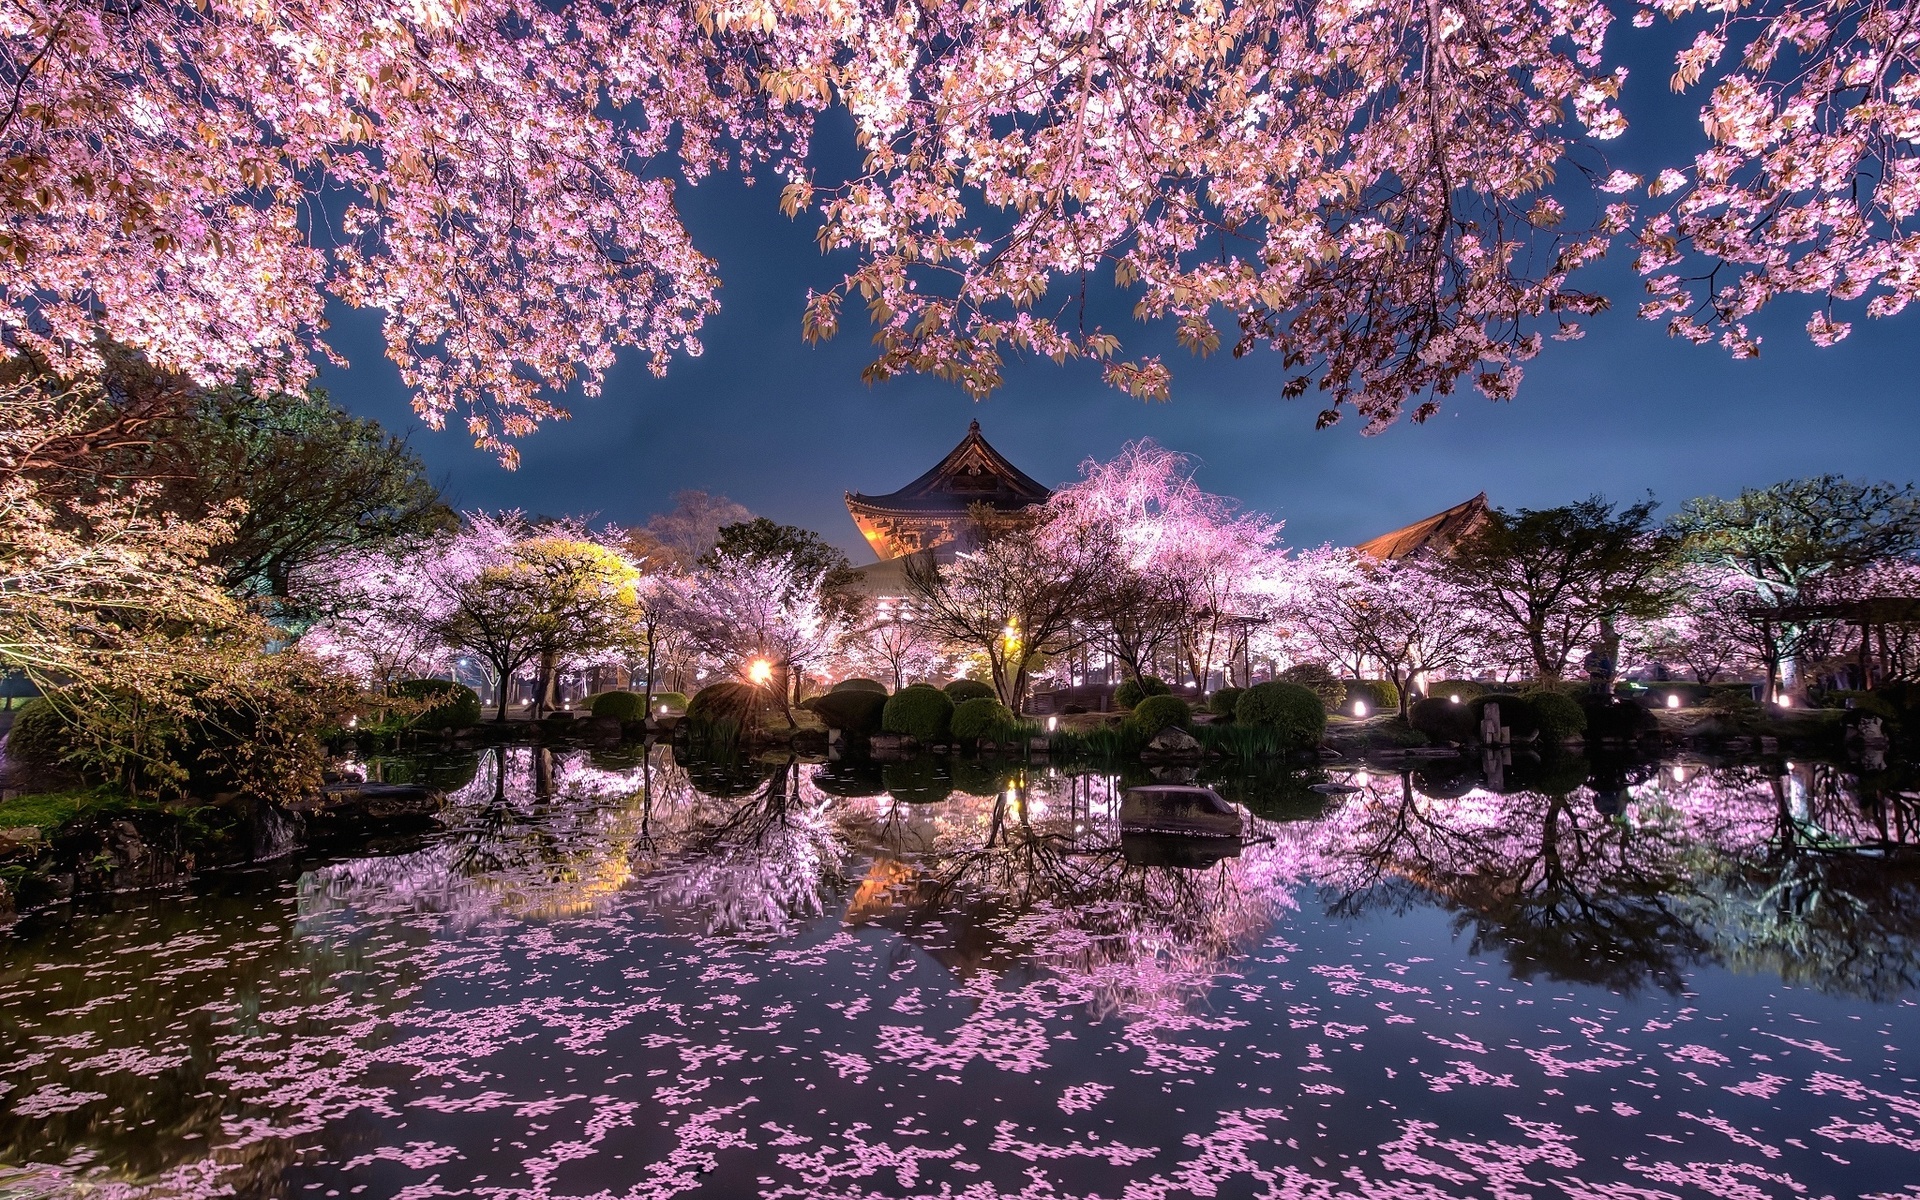 сады сакуры в японии